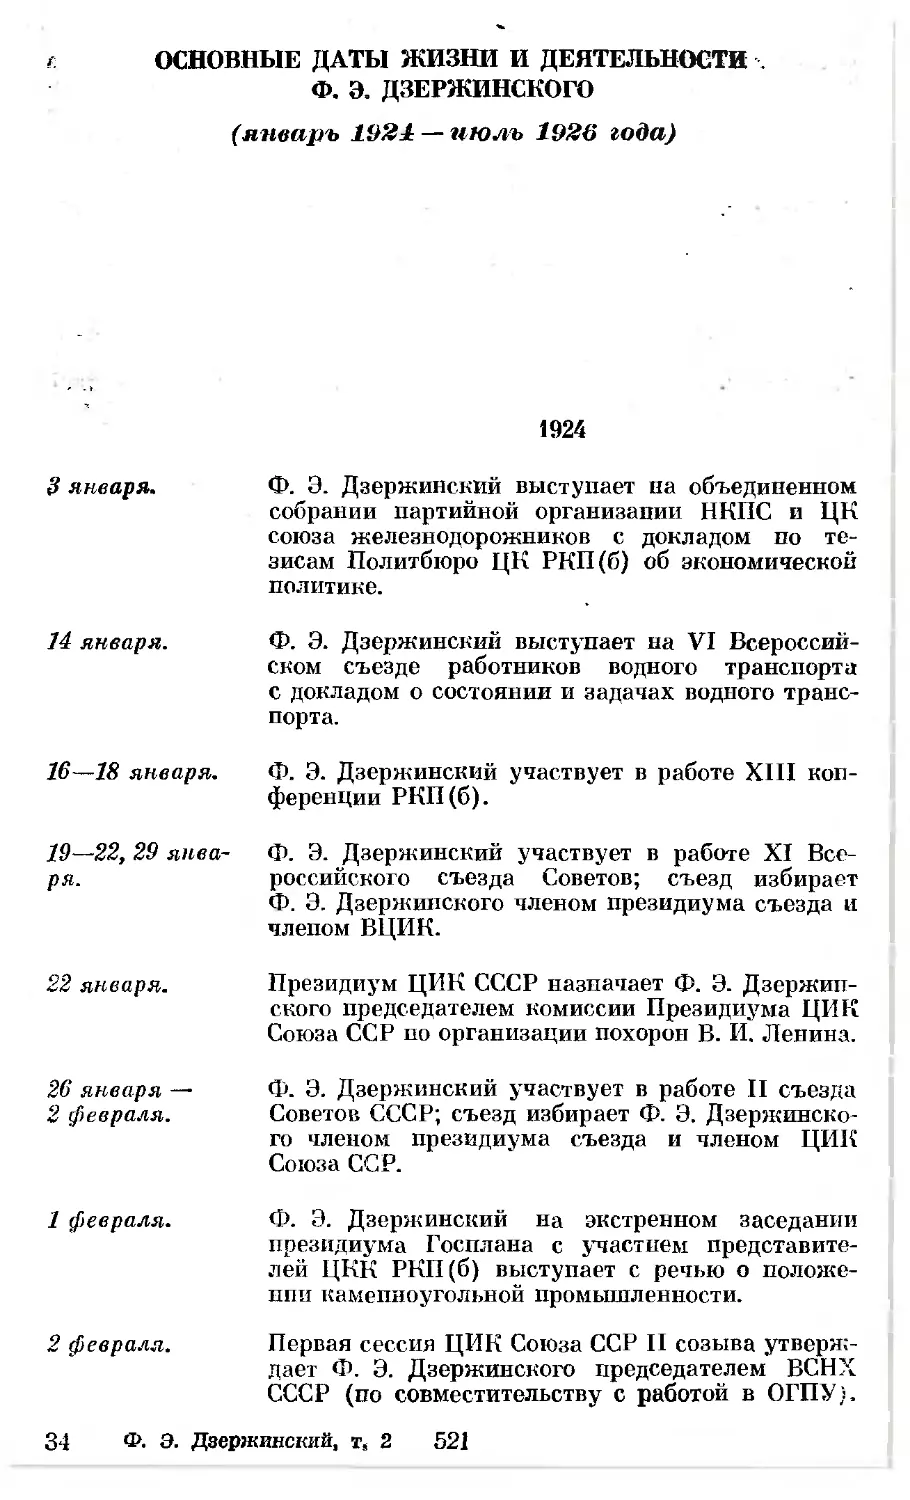 Основные даты жизни и деятельности Ф. Э. Дзержинского